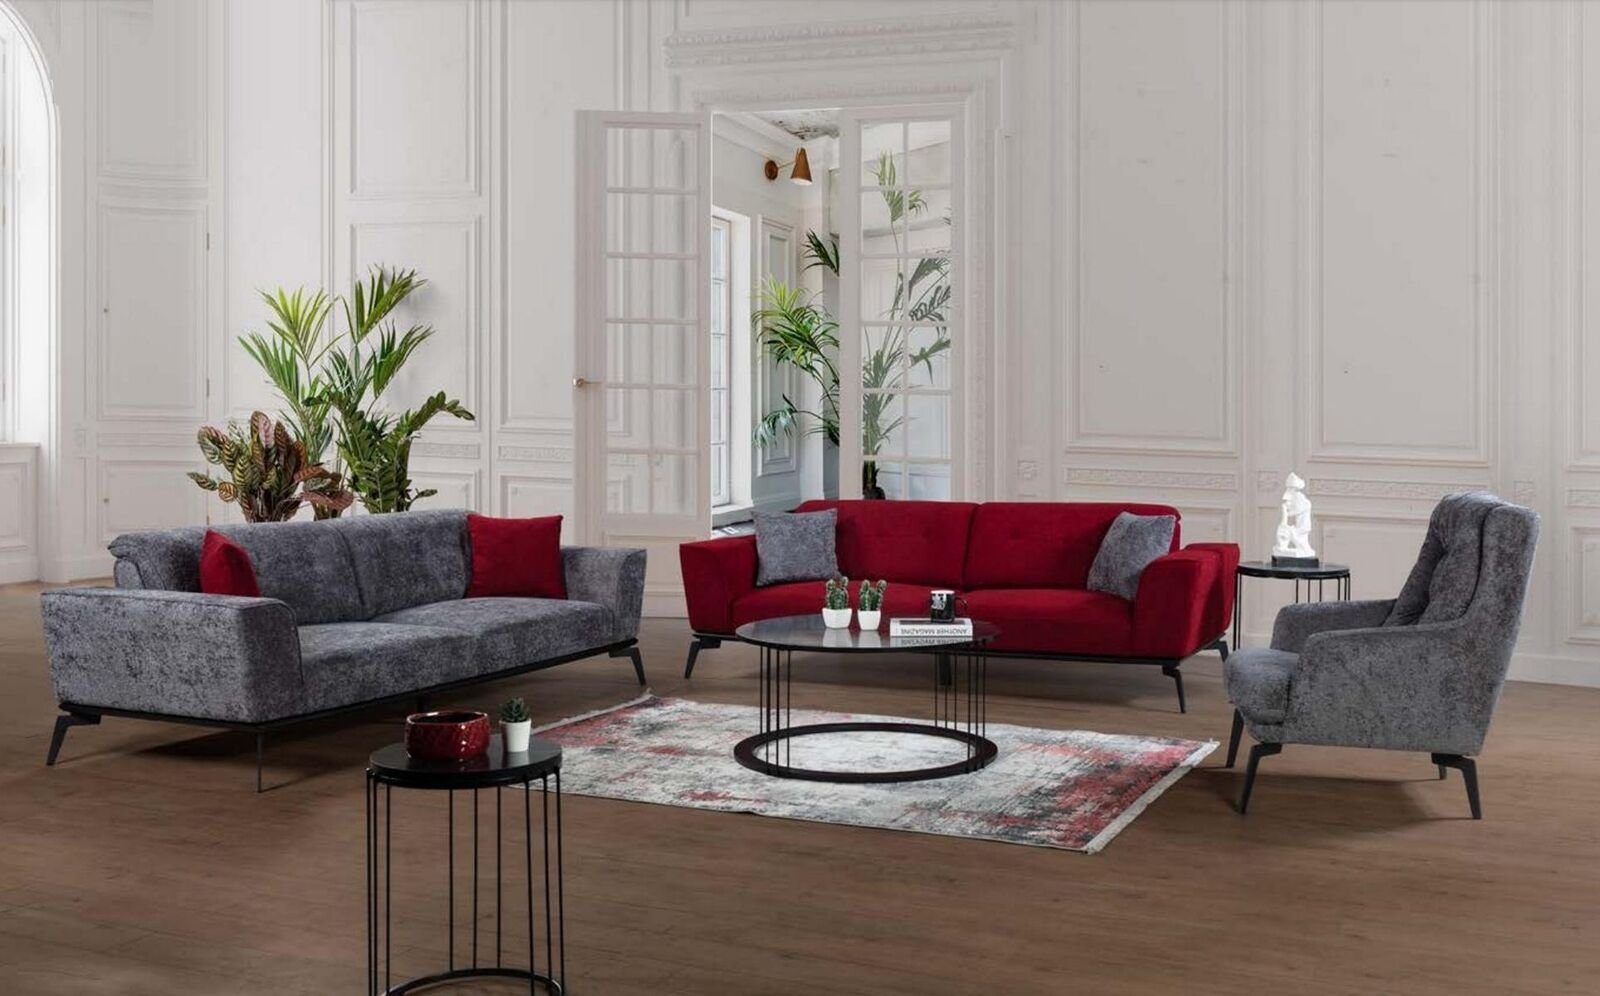 Moderne Möbel JVmoebel Textil Rot 3-Sitzer Couchen Sofas Luxus Dreisitzer Stoff Couch